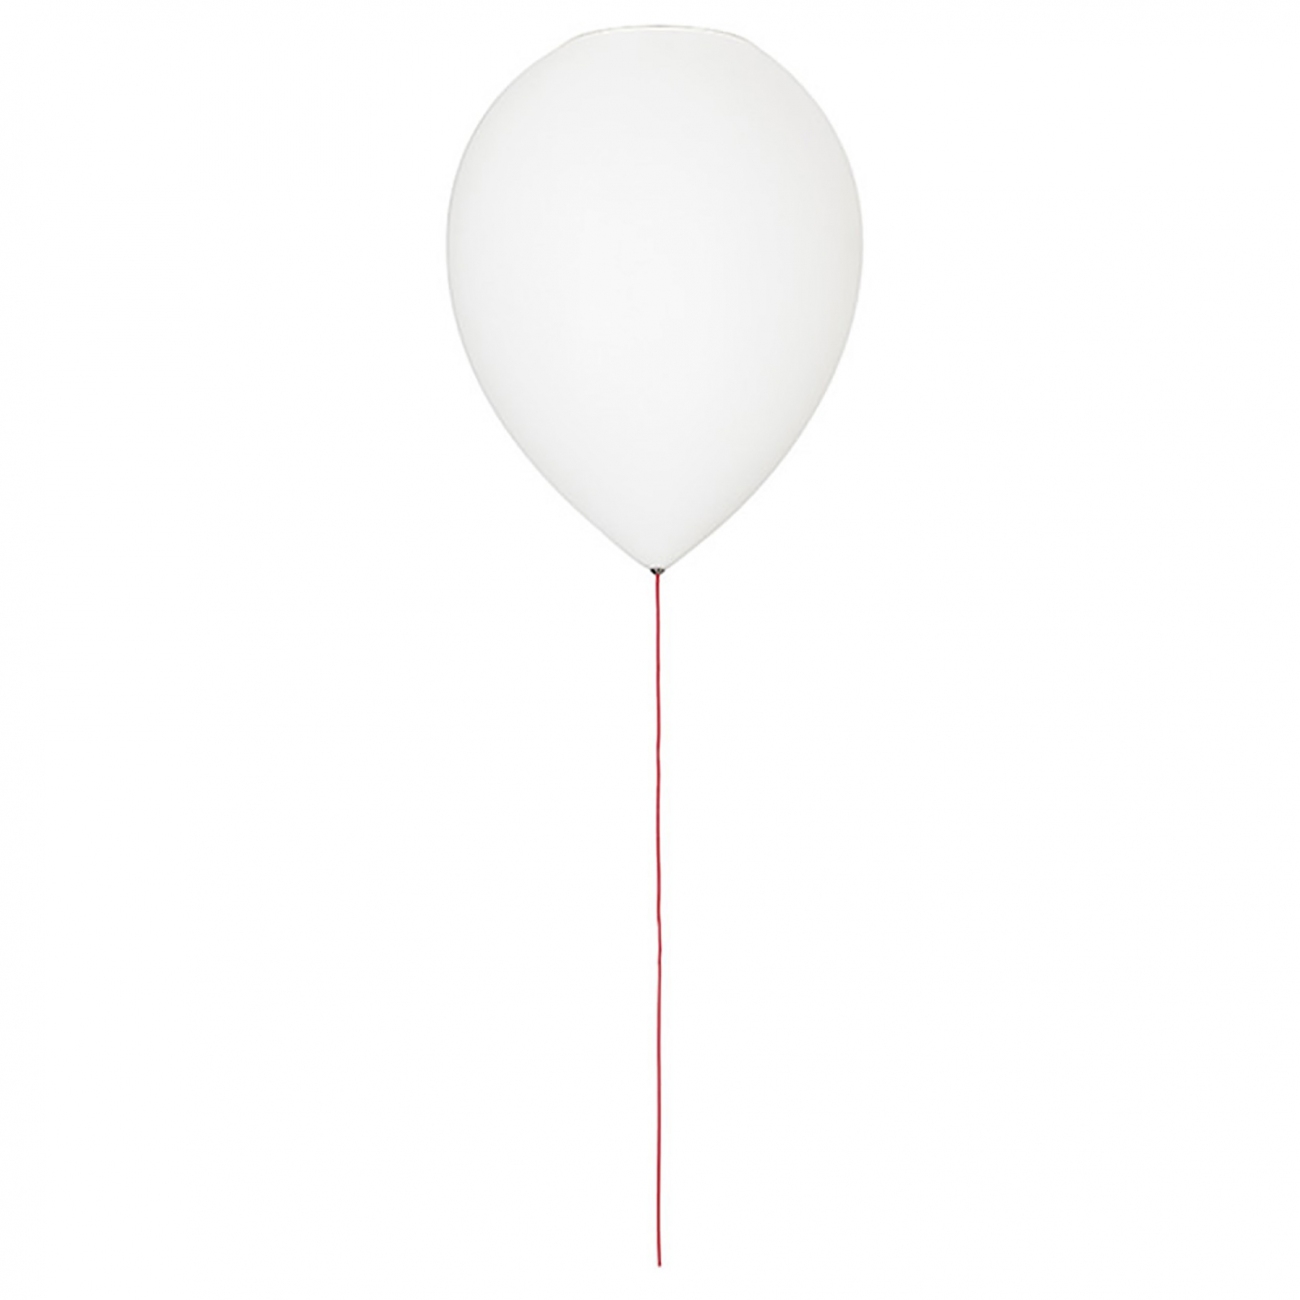 Estiluz Balloon lampada a soffitto